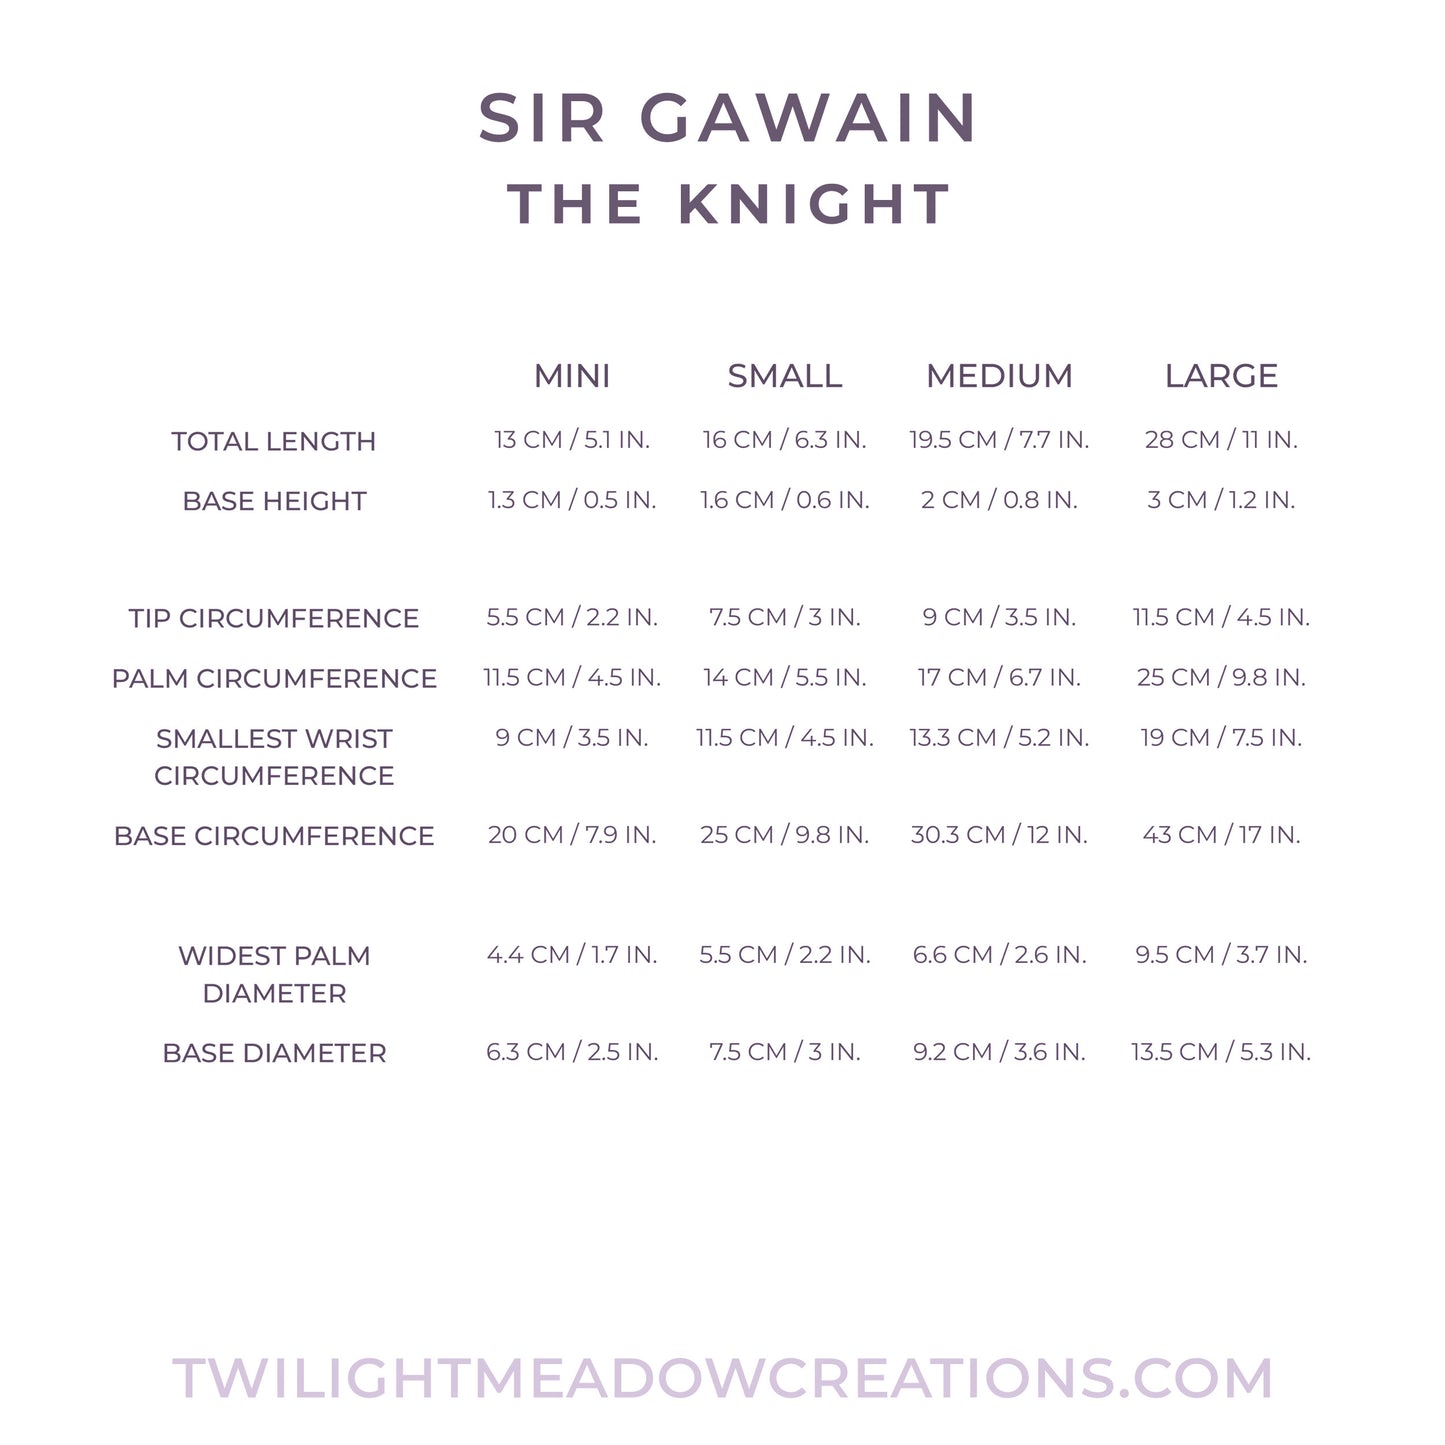 Small Sir Gawain (Firmness: Soft)